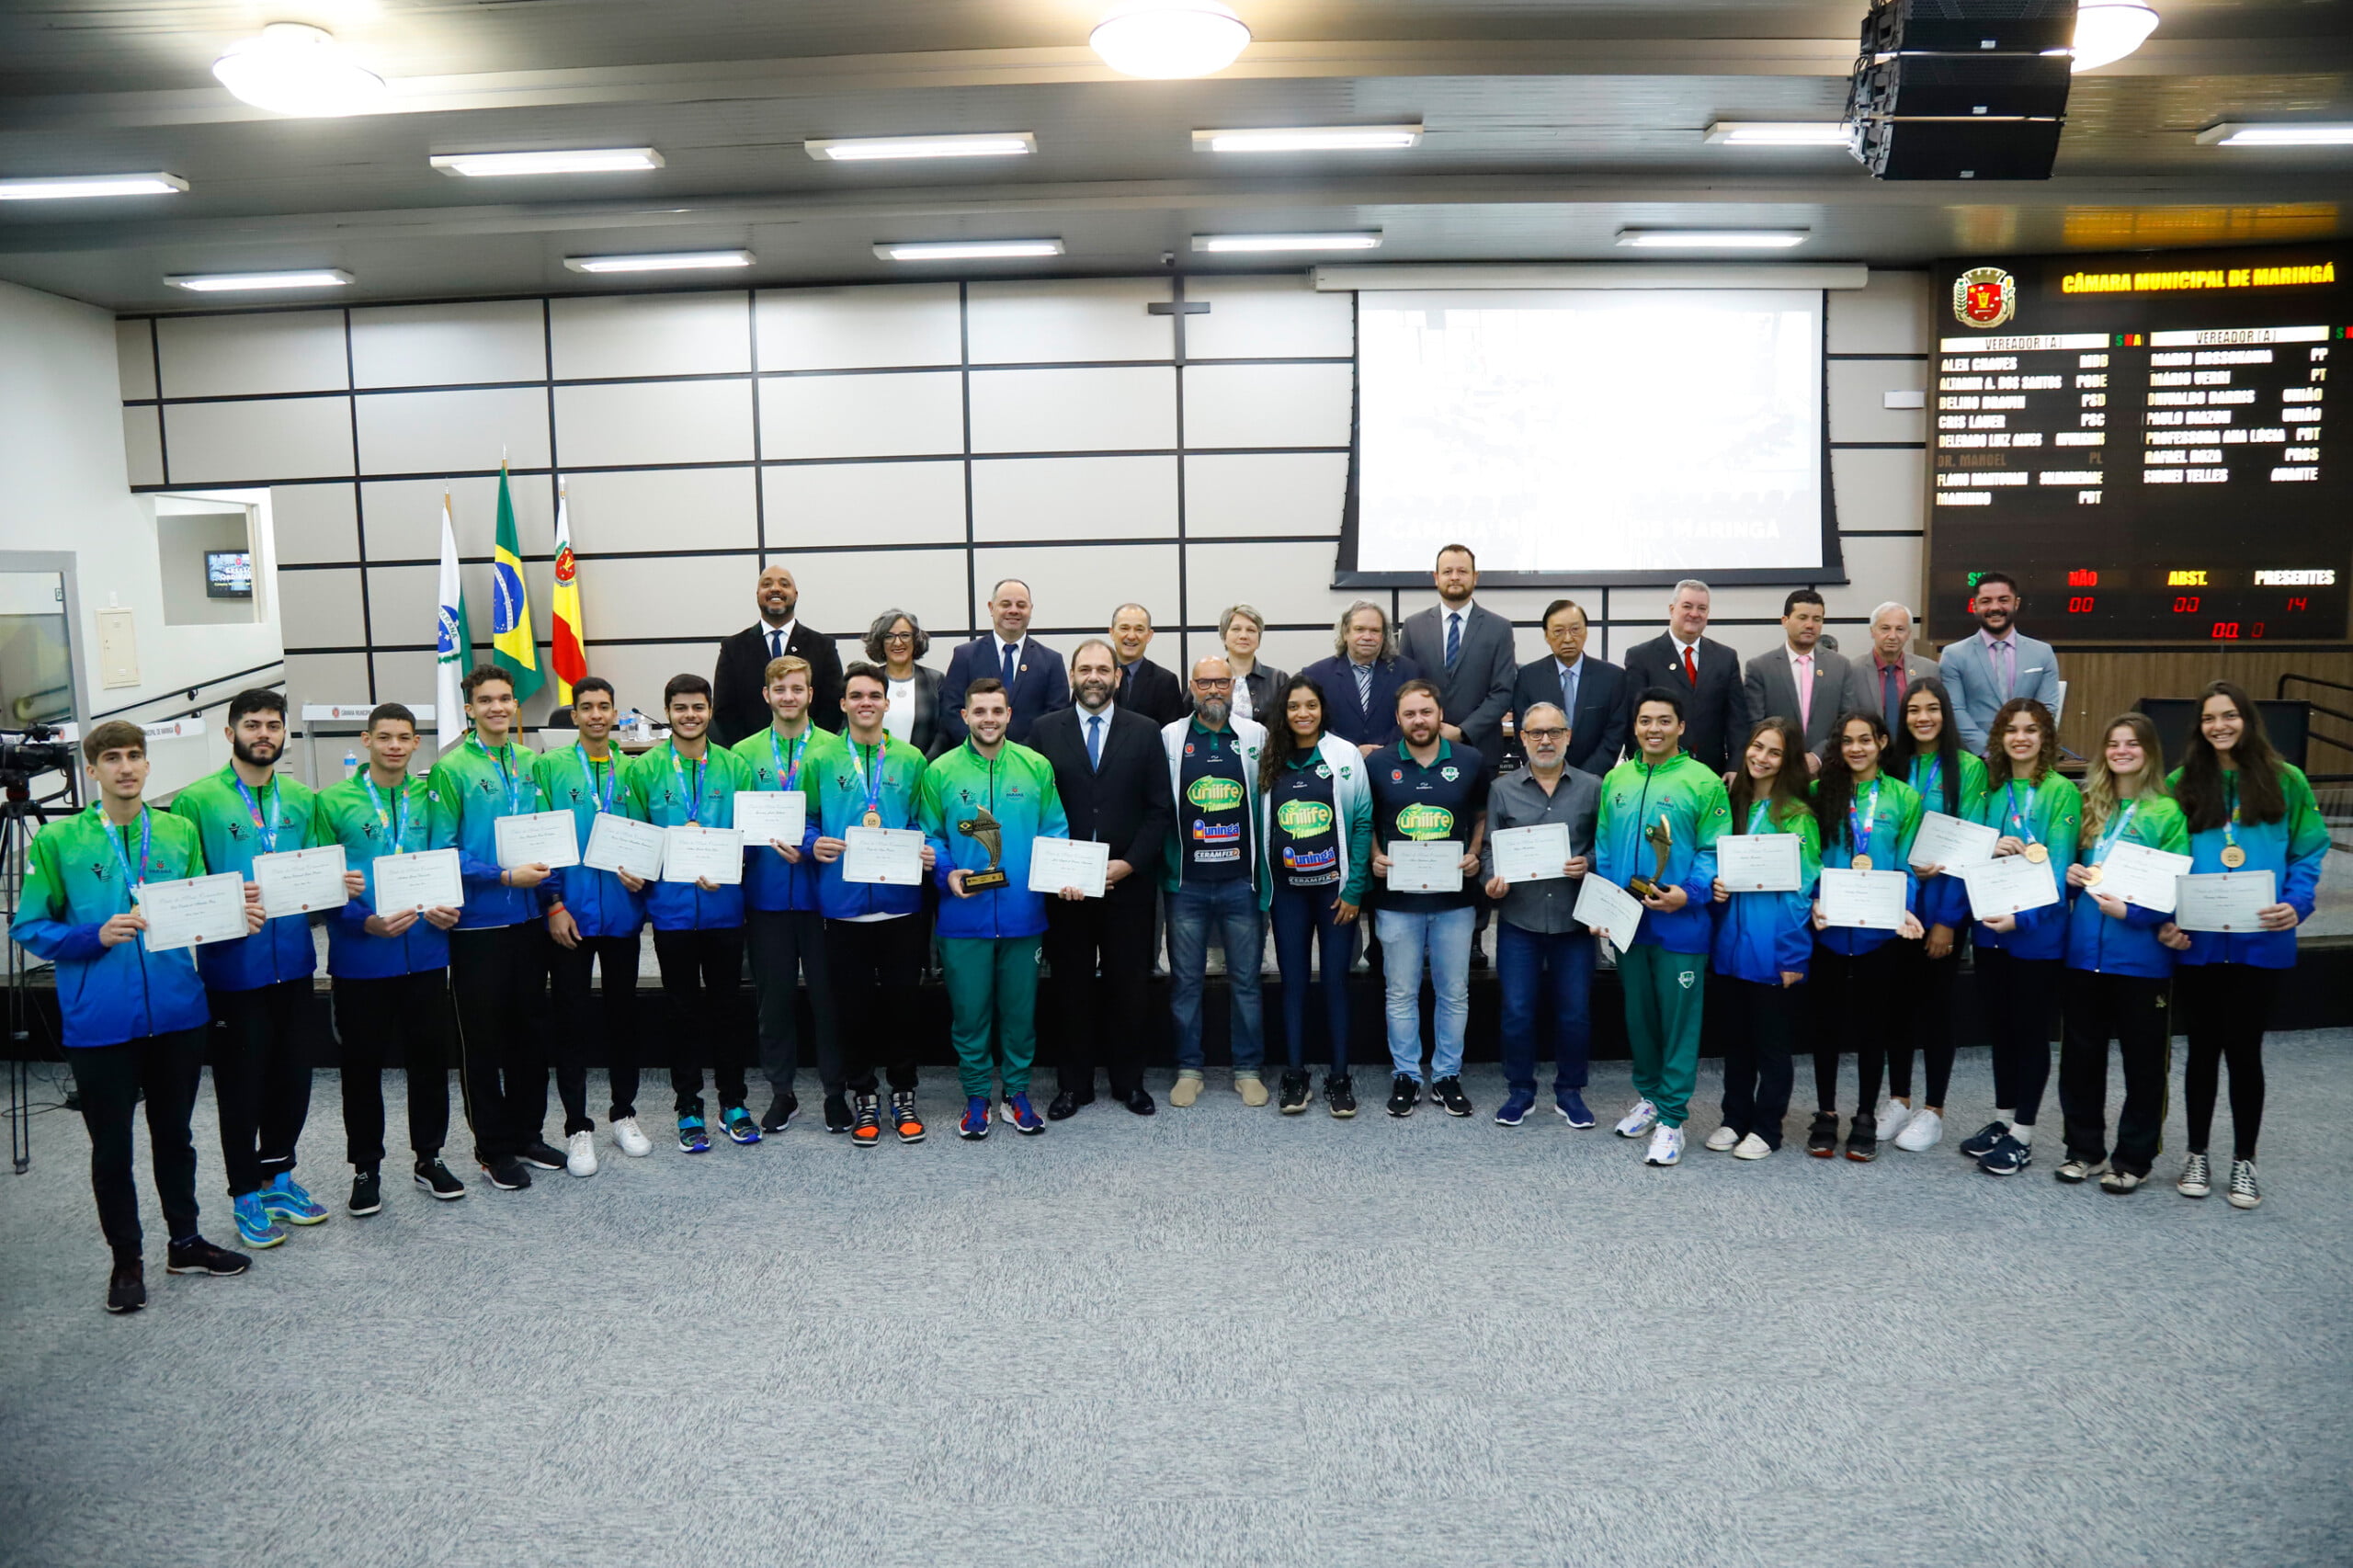 Equipes campeãs de vôlei recebem título de Mérito Comunitário